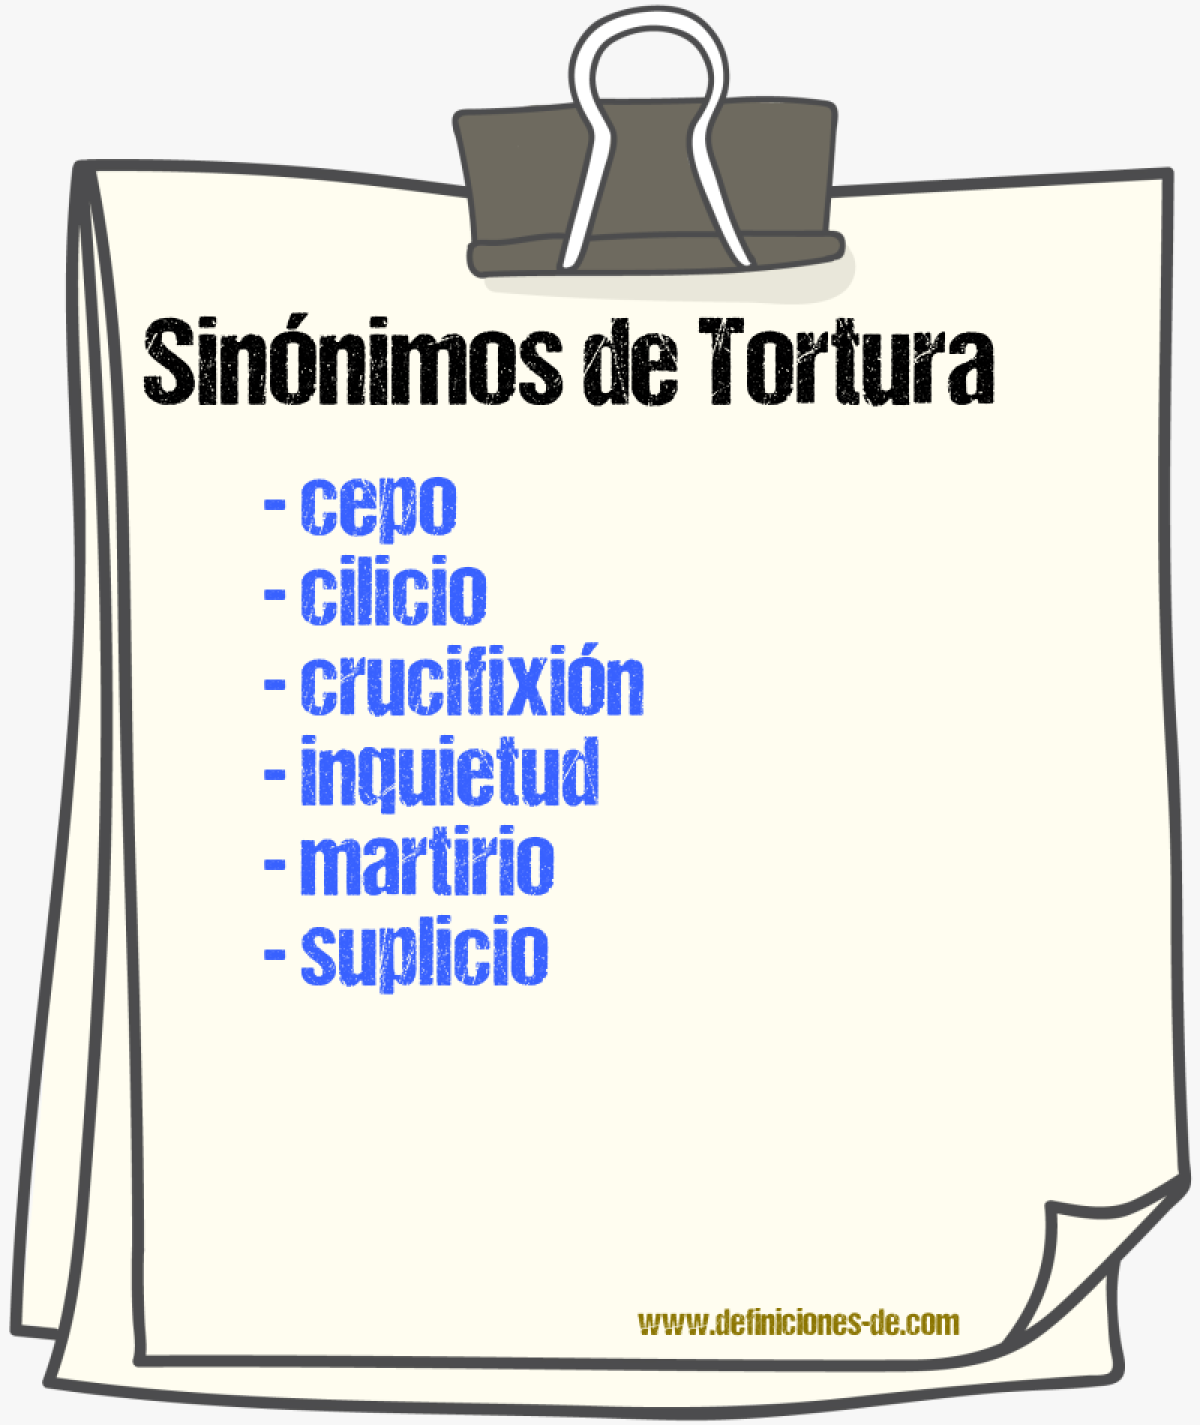 Sinónimos de tortura